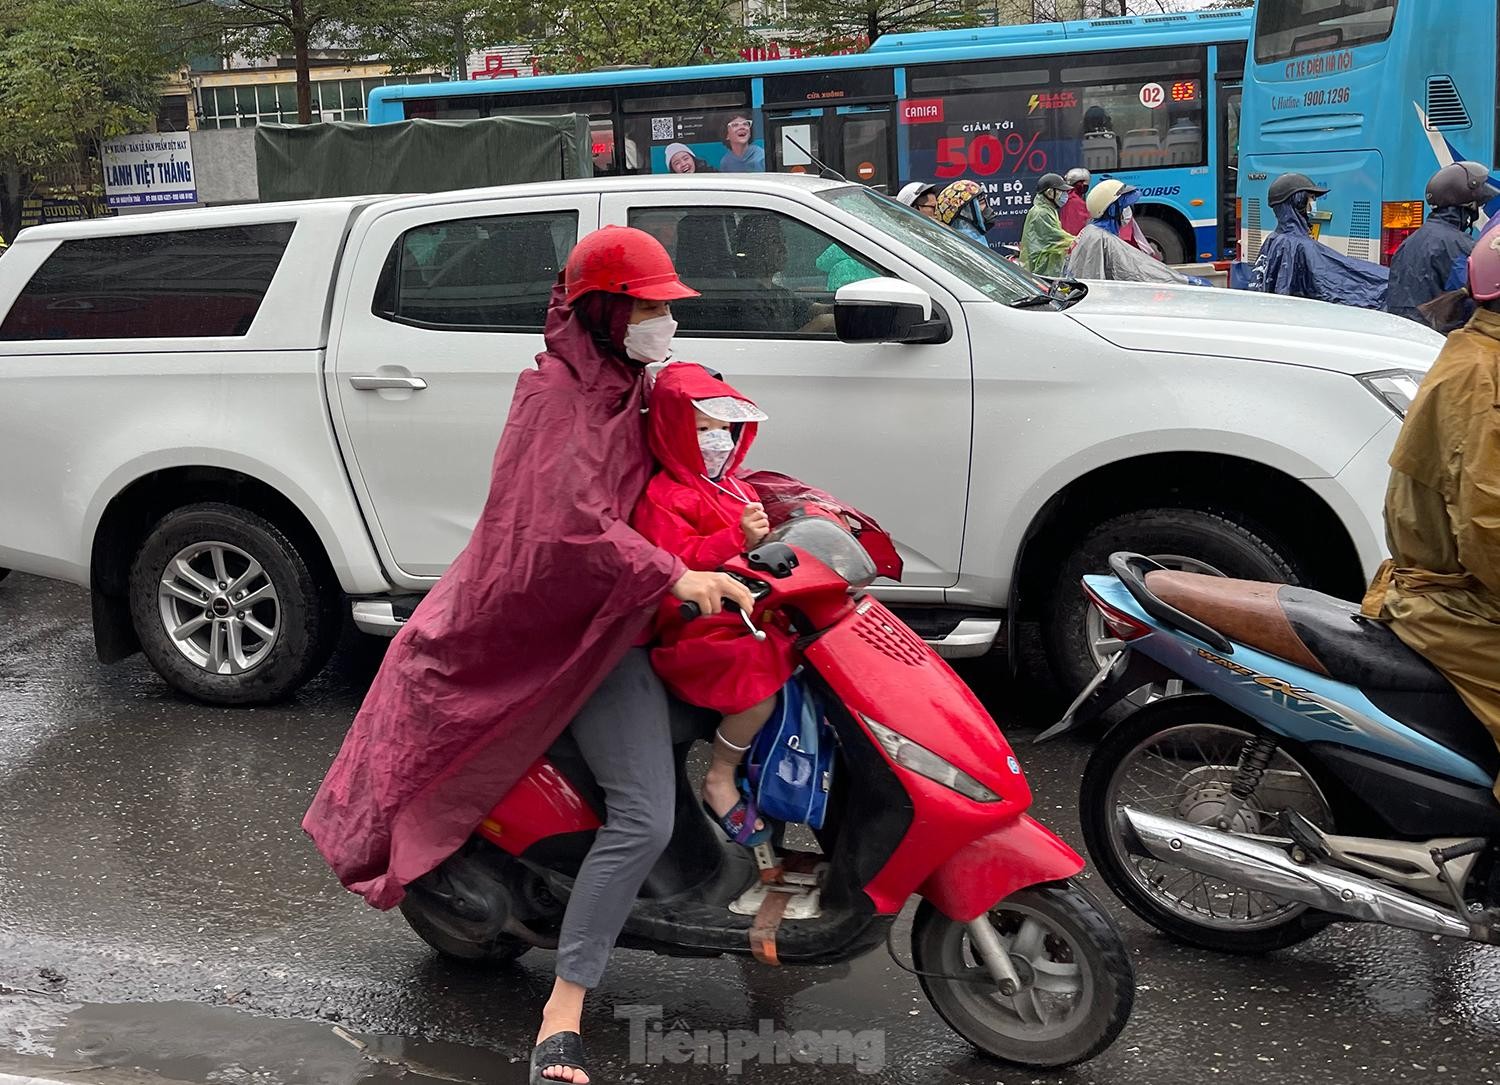 Gió mùa tràn về Hà Nội, biển người nhích từng bước giữa cơn mưa lúc sáng sớm - Ảnh 2.